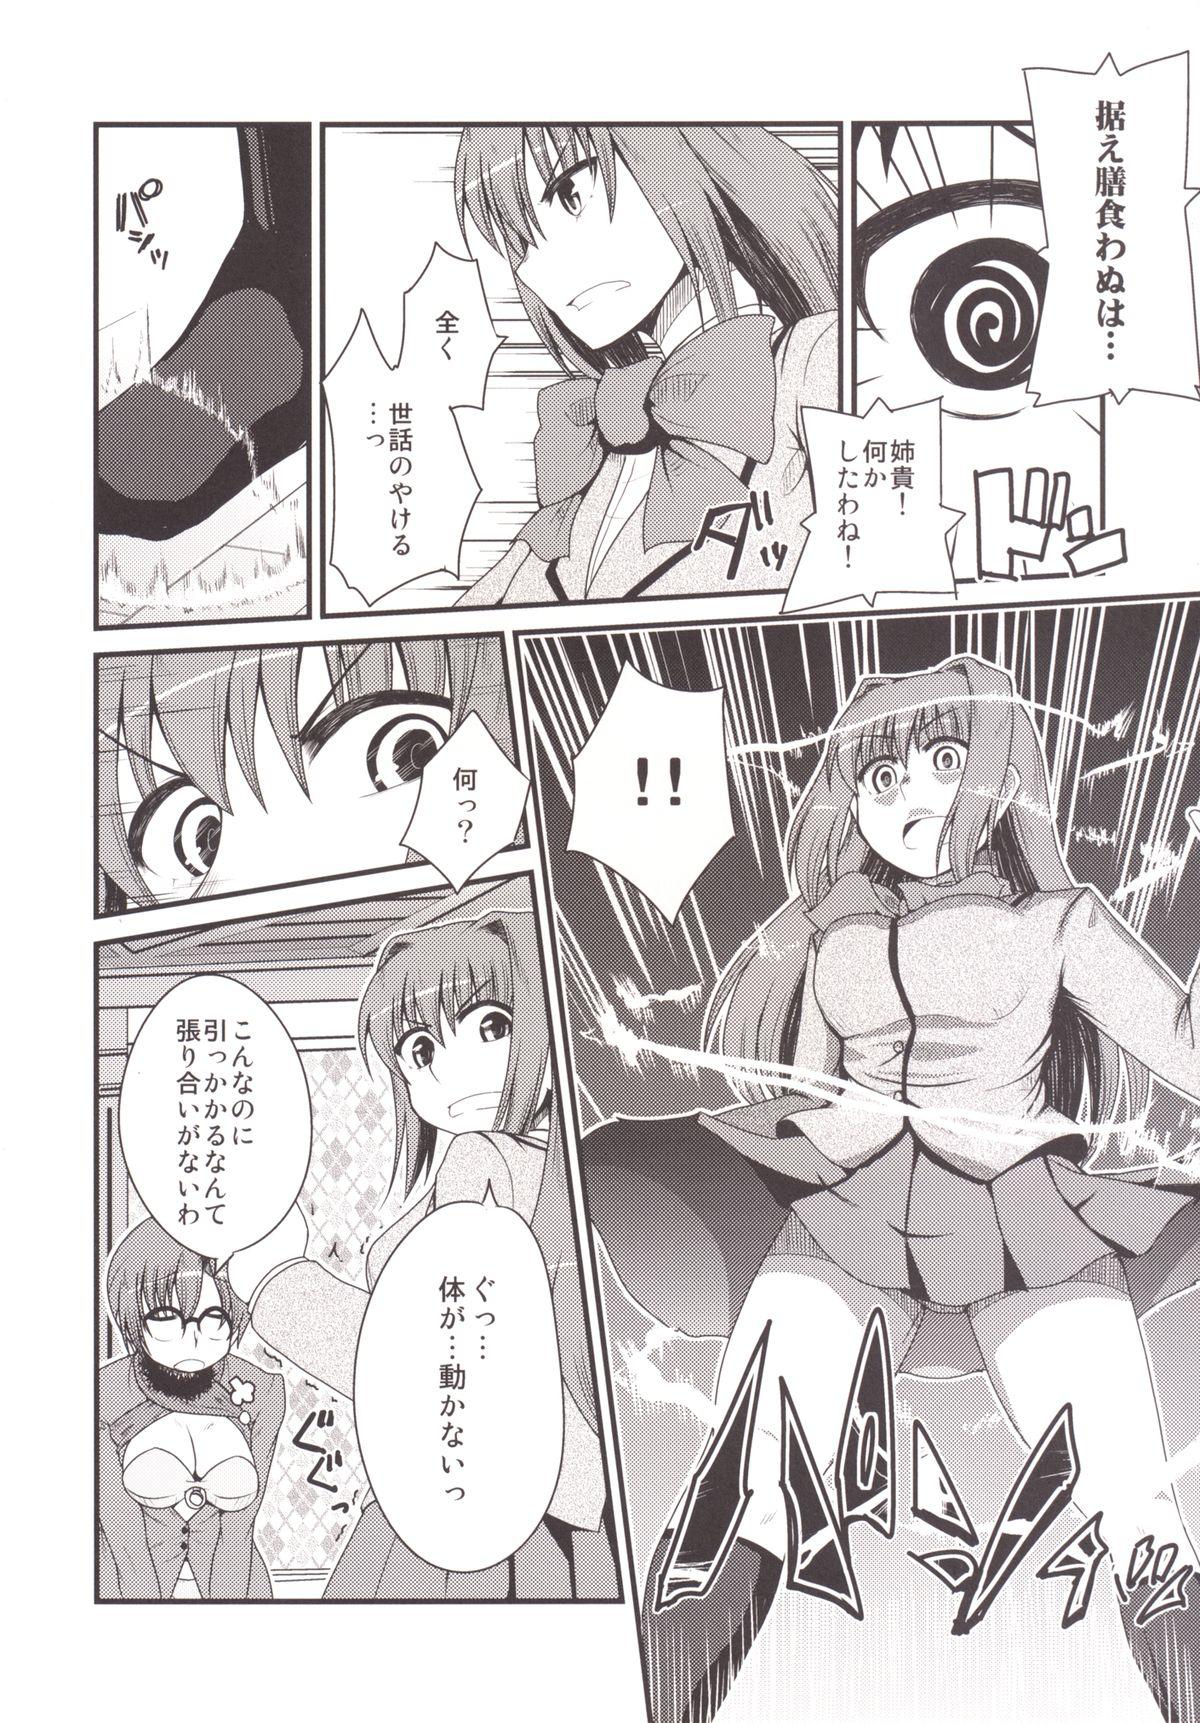 Travesti Ittsu Main 2 - Mahou tsukai no yoru Pica - Page 8